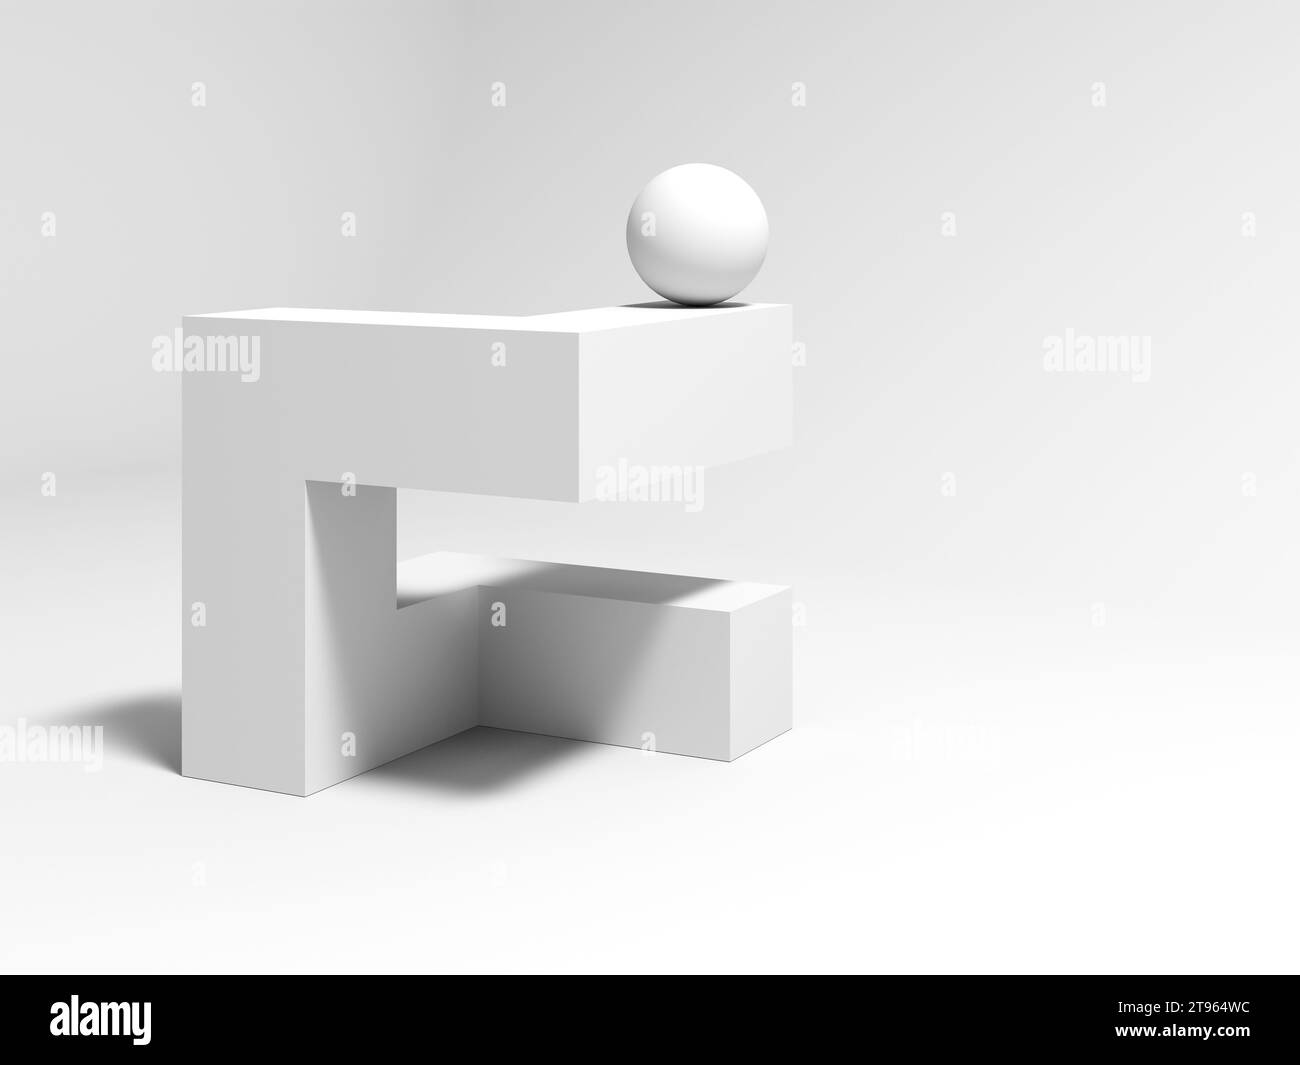 Installazione geometrica in bianco astratto con una sfera posizionata su un oggetto cubico, illustrazione di rendering 3d. Foto Stock